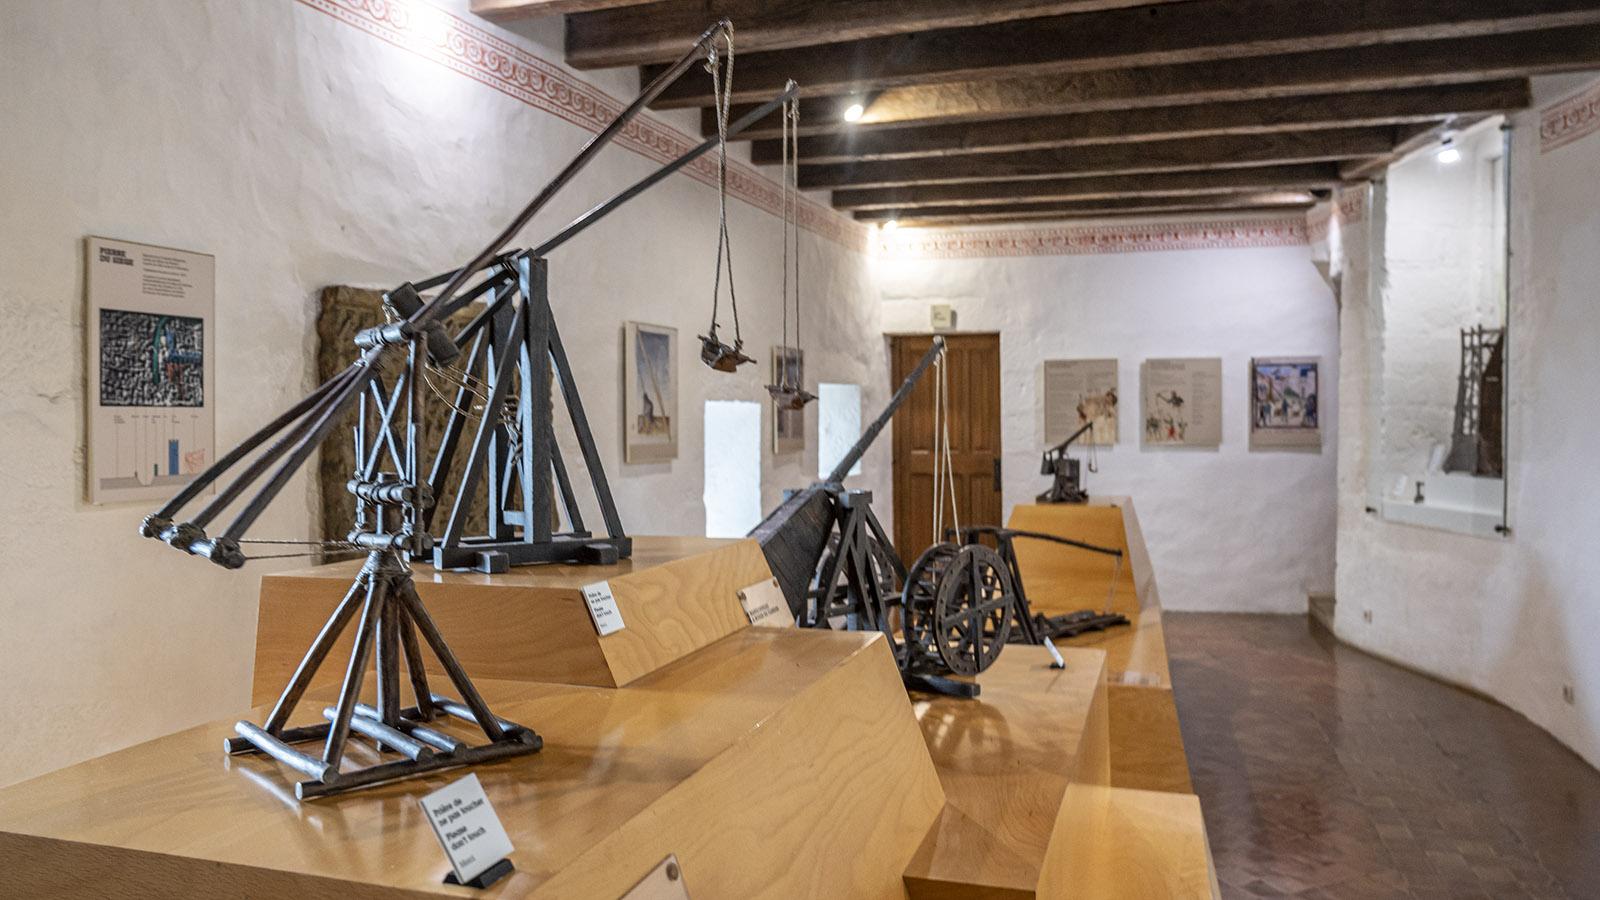 Drinnen zeigt das Museum Kriegsmaschinerie im Modell, auf dem Freigelände in voller Größe. Foto: Hilke Maunder